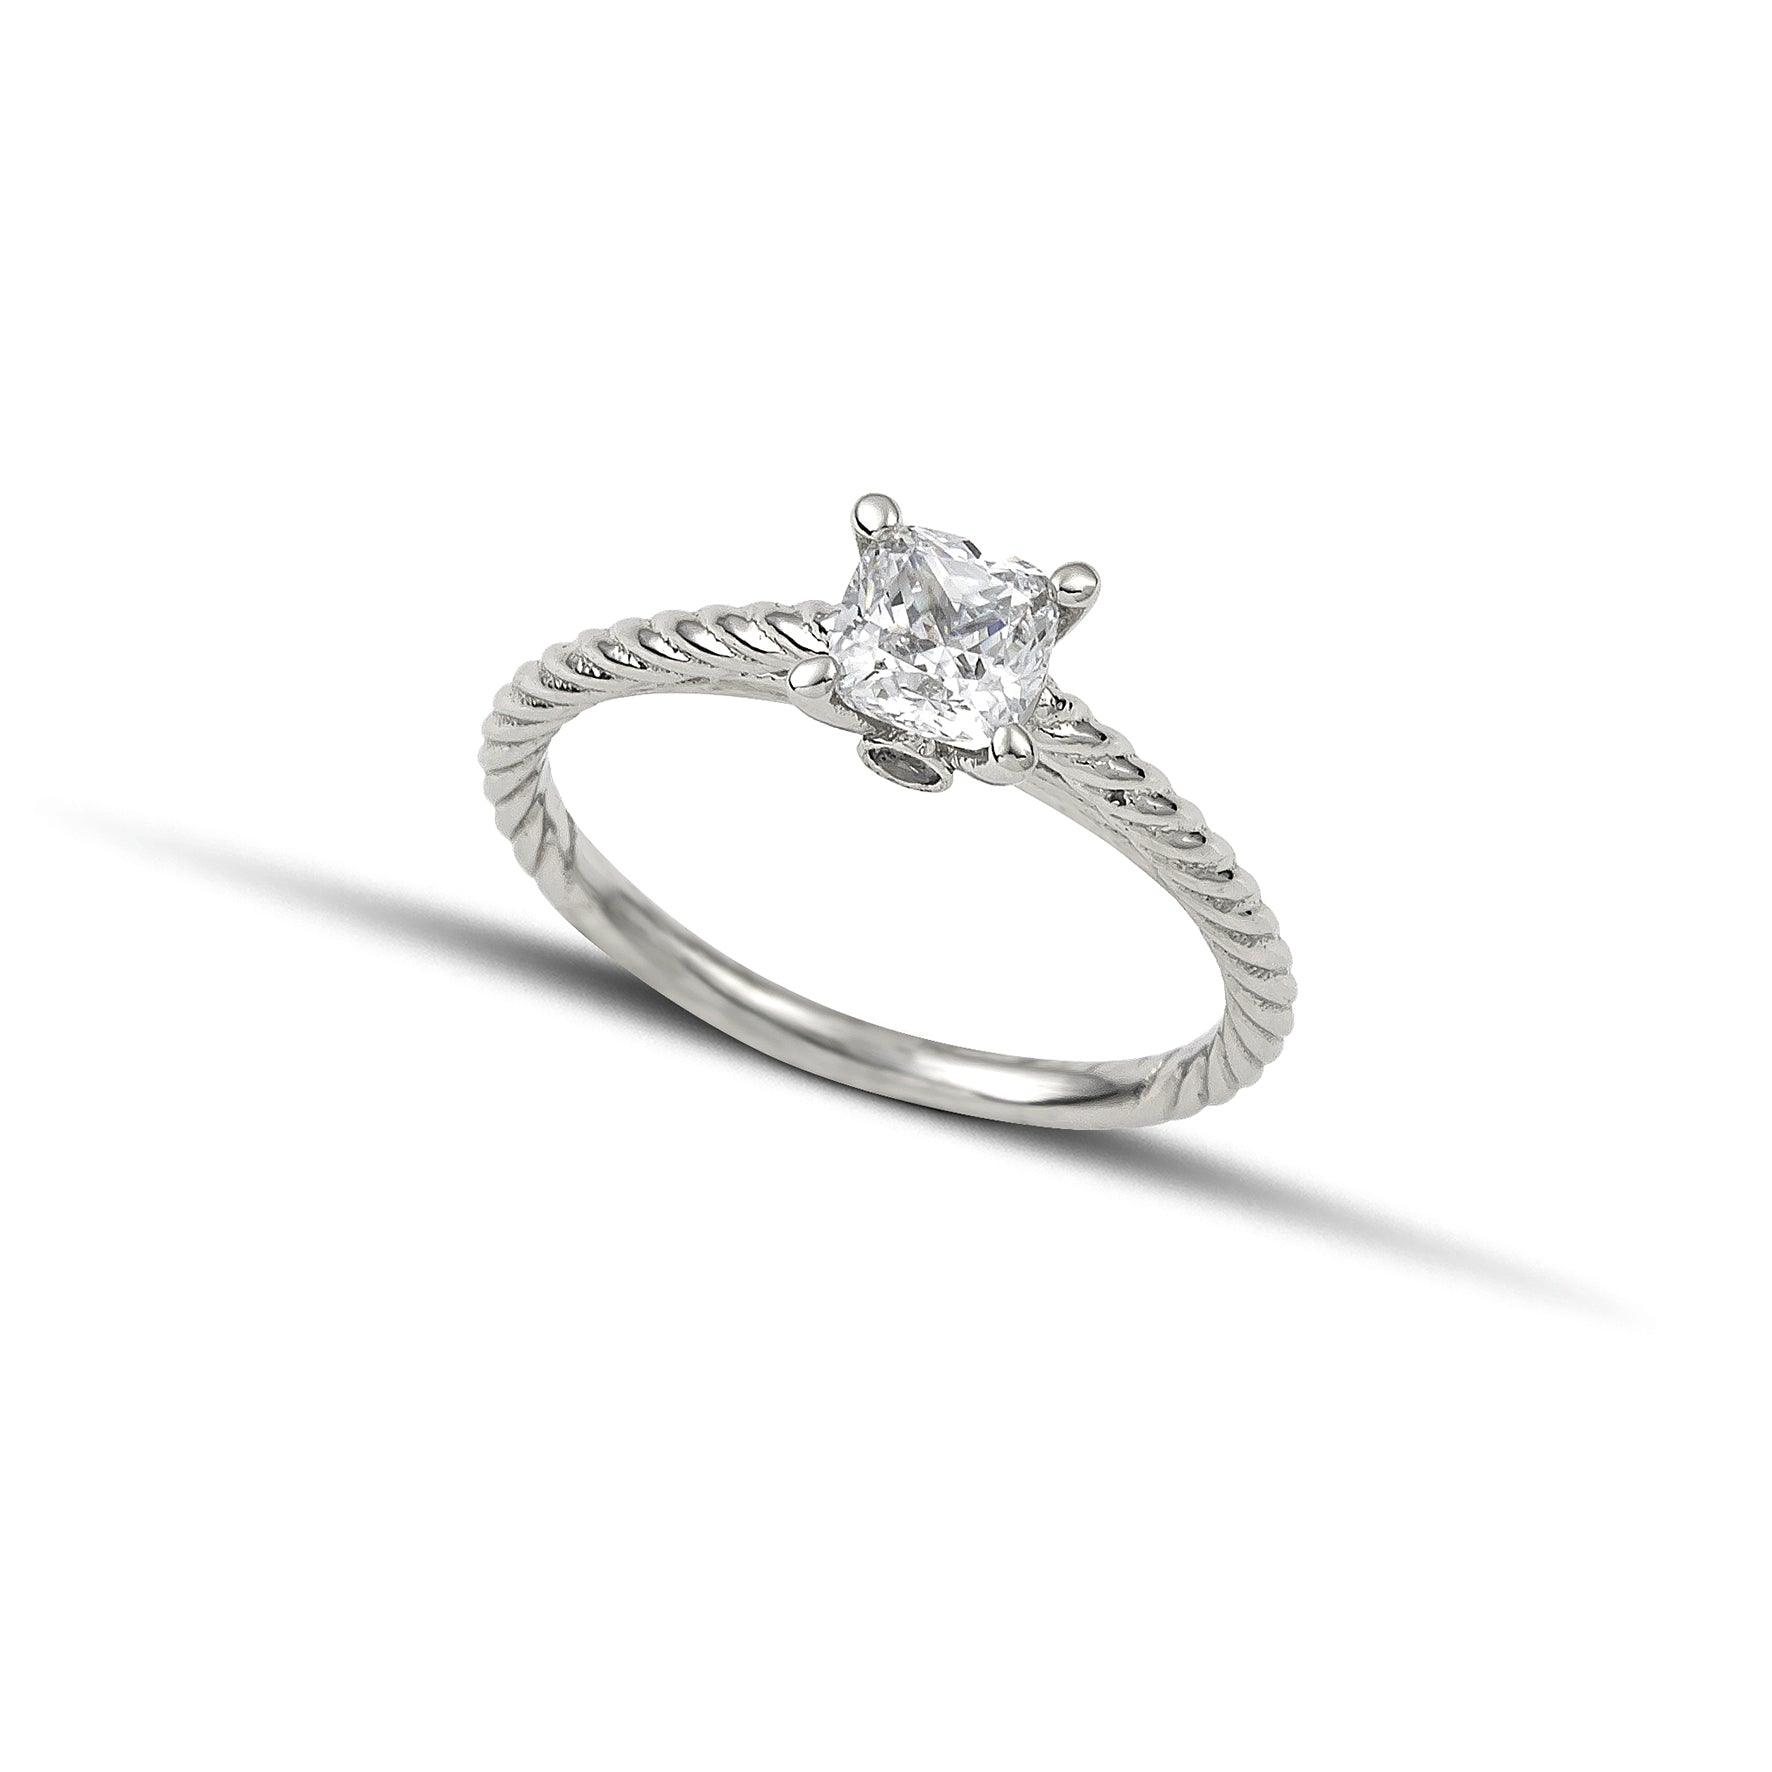 Μονόπετρο δαχτυλίδι με διαμάντι κατασκευασμένο από λευκόχρυσο με ανάγλυφες λεπτομέρειες στα πλαίνά μέρη του δαχτυλιδιού και καστόνι με τέσσερα δόντια.